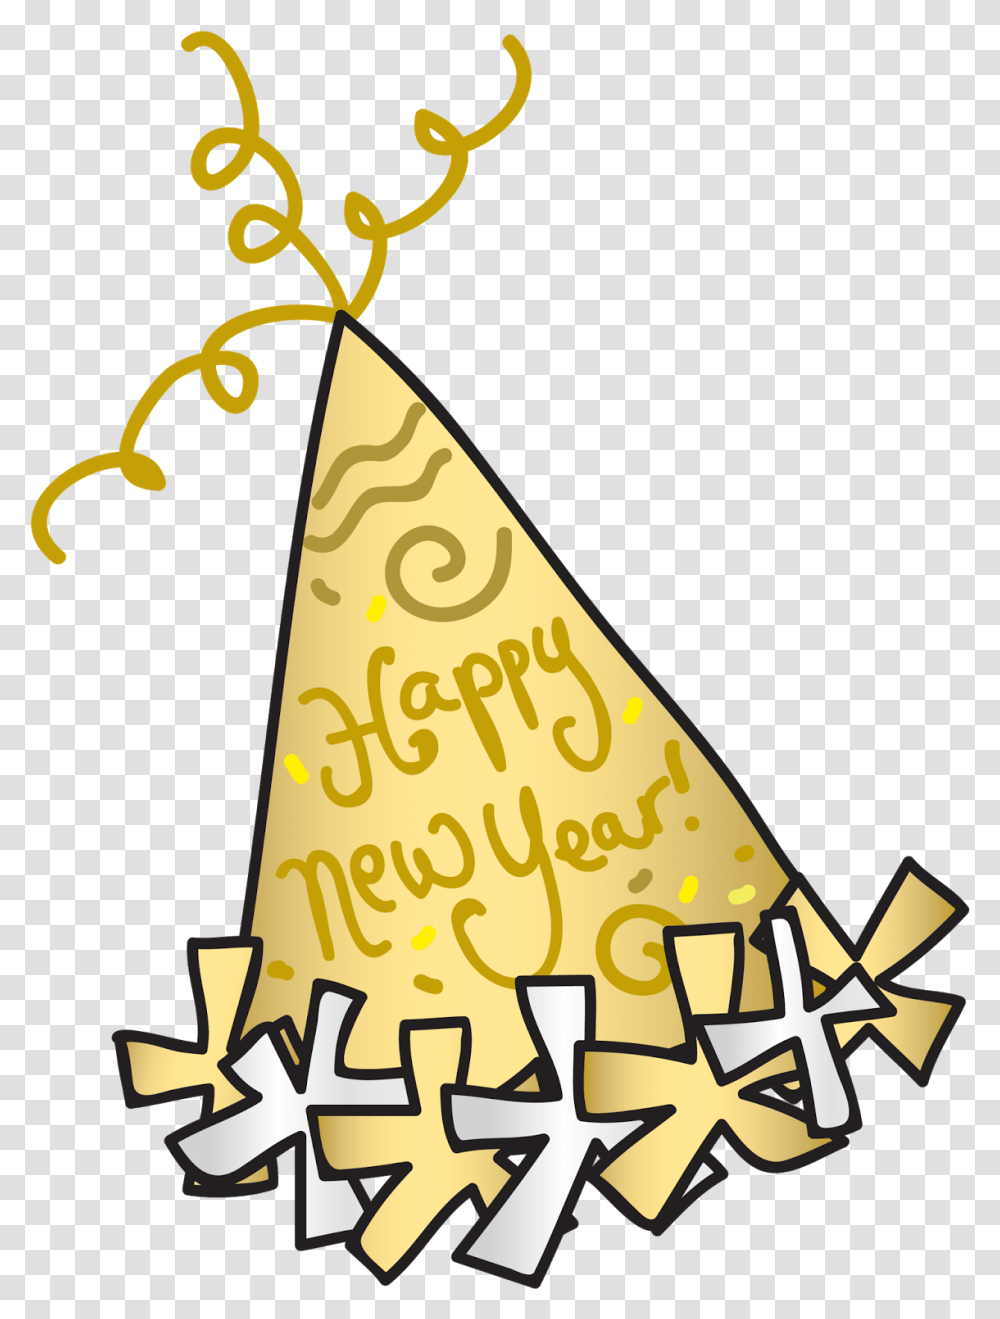 New Years Eve Clipart New Years Eve Clipart, Clothing, Apparel, Party Hat Transparent Png